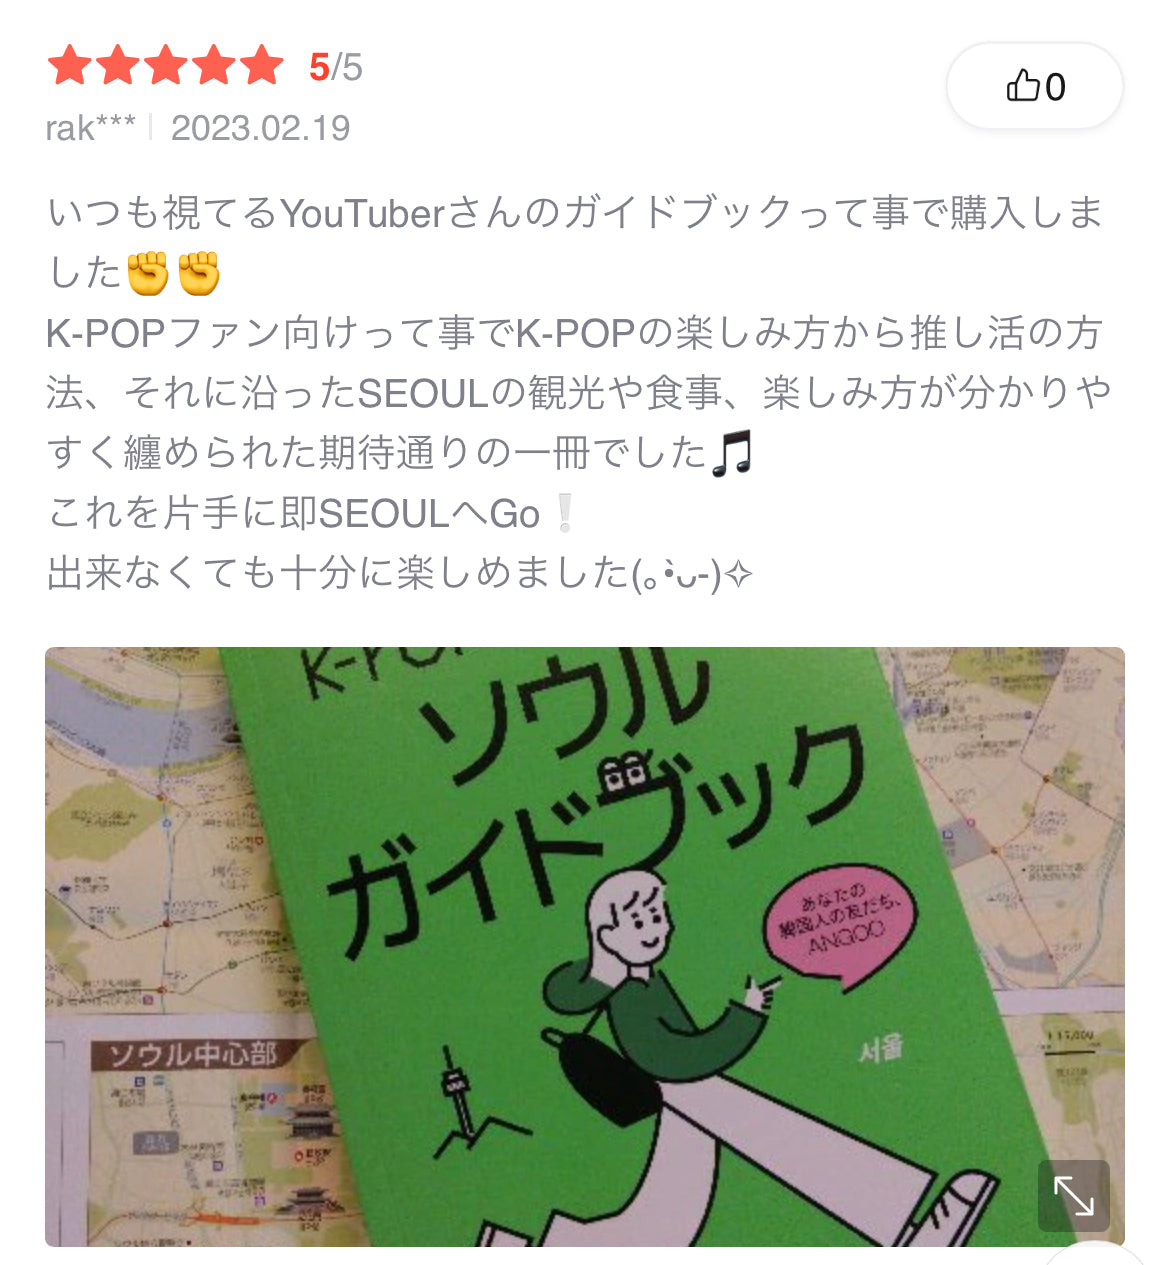 K-POPファン向け ソウルガイドブック(日本語)